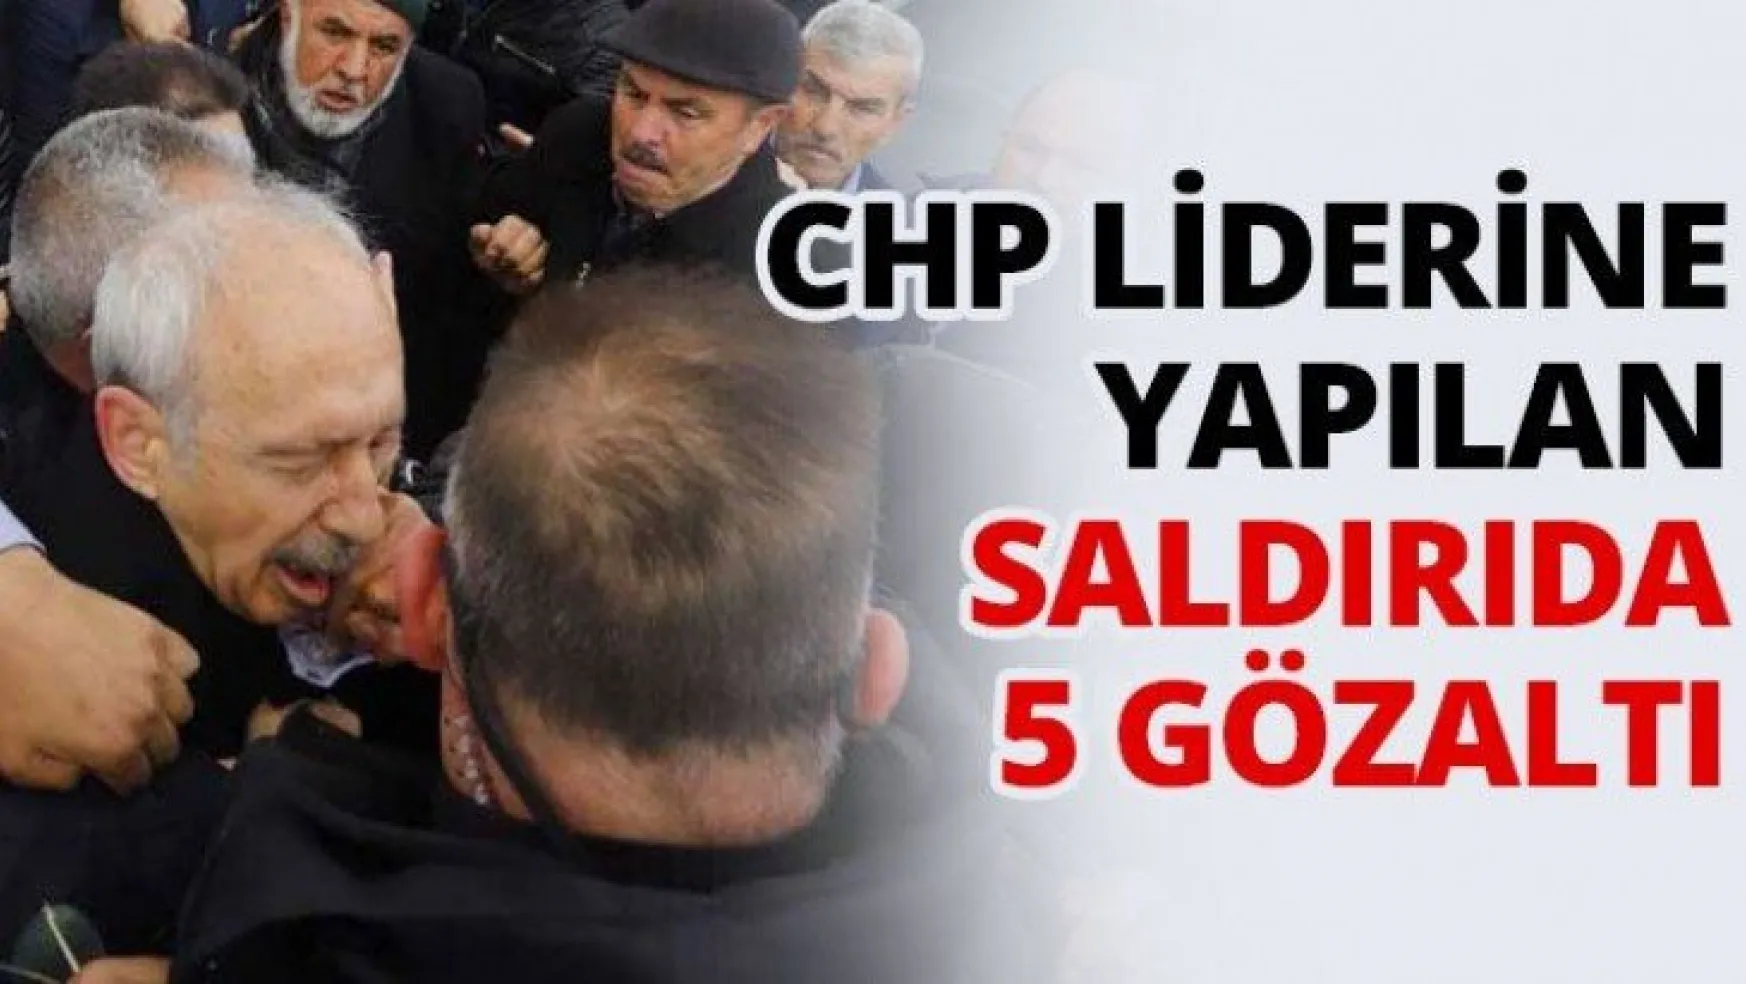 CHP liderine yapılan saldırıda 5 gözaltı